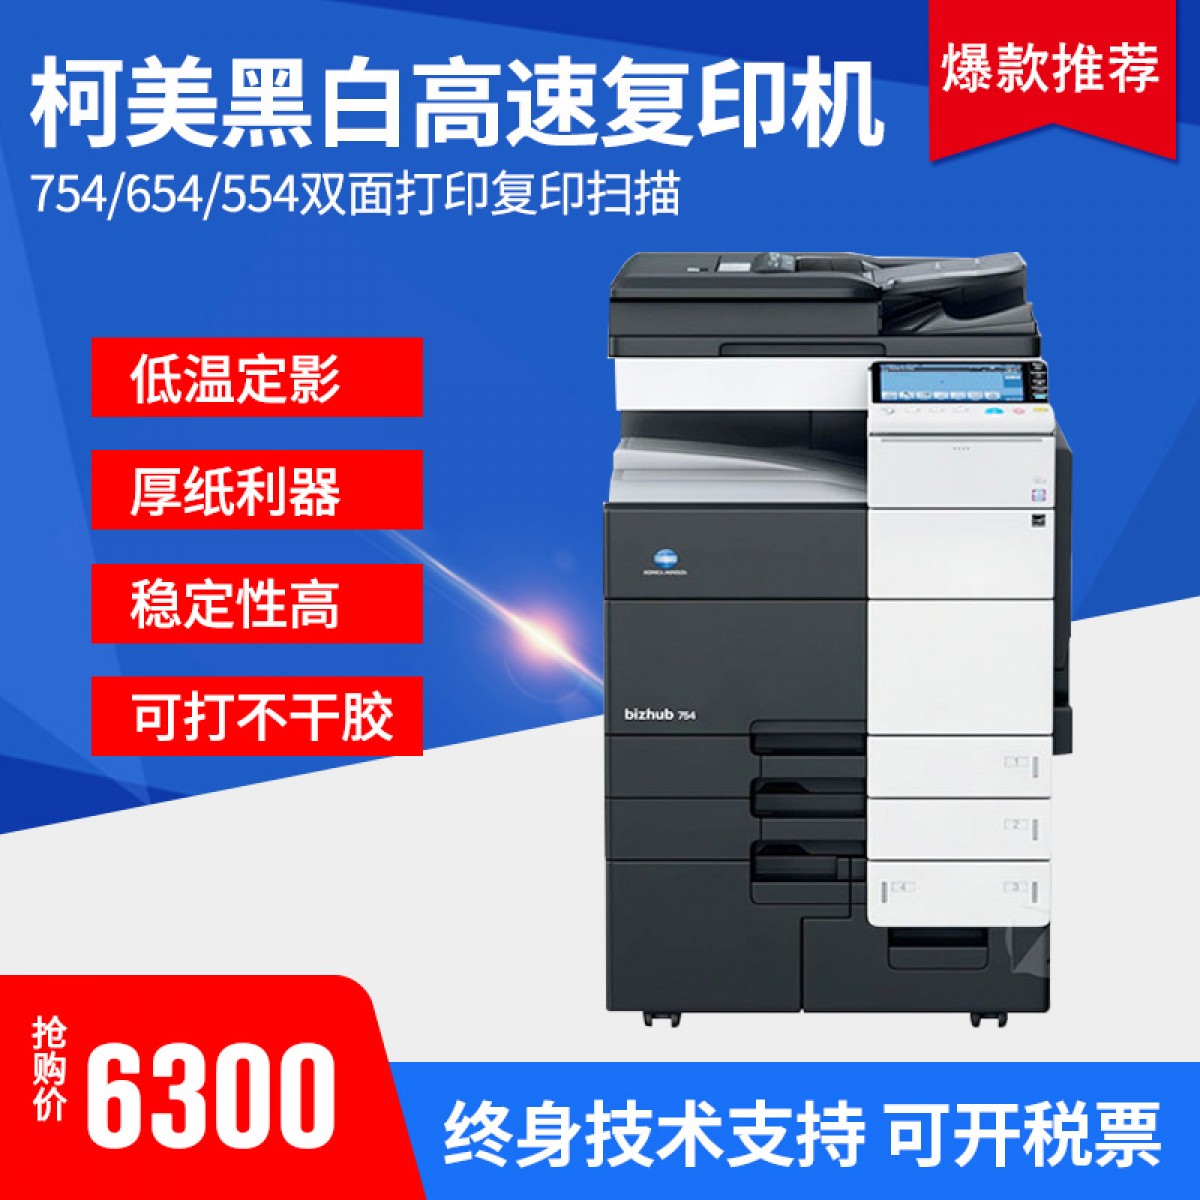 柯美黑白复印机754/554/454打印复印扫描高速机